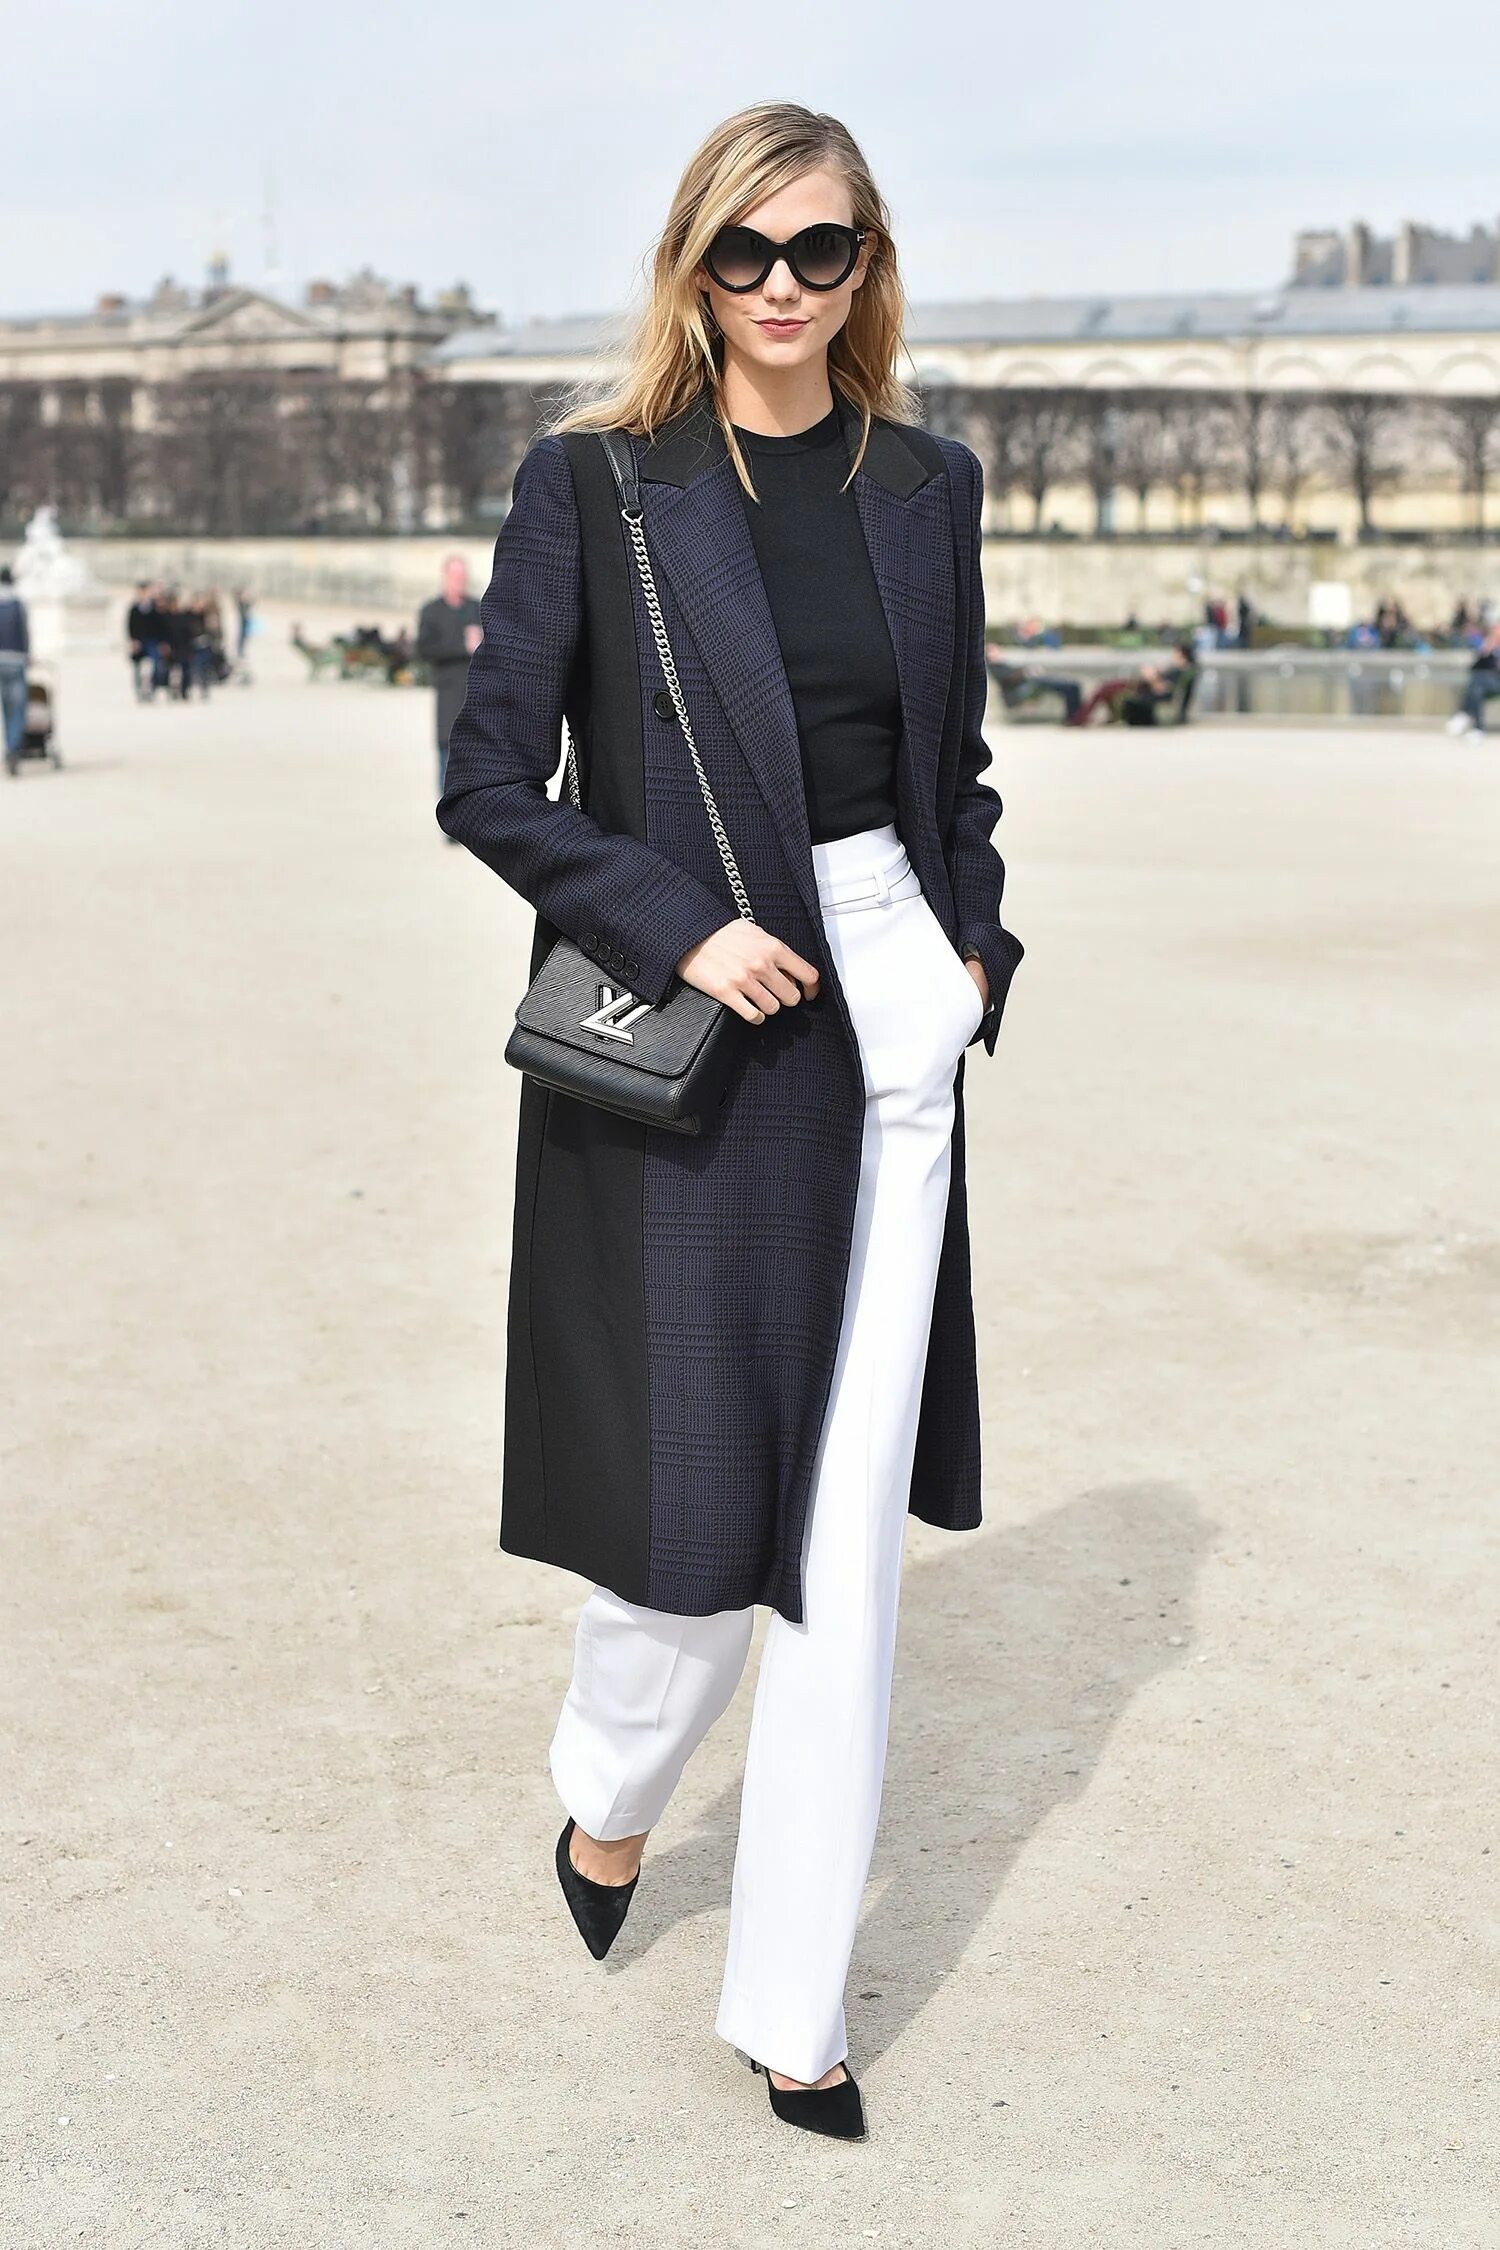 Черное пальто и белые брюки. Элегантный образ. Стильный образ для женщины 40 лет. Стильные образы 40+ для женщин. Монохромный образ.